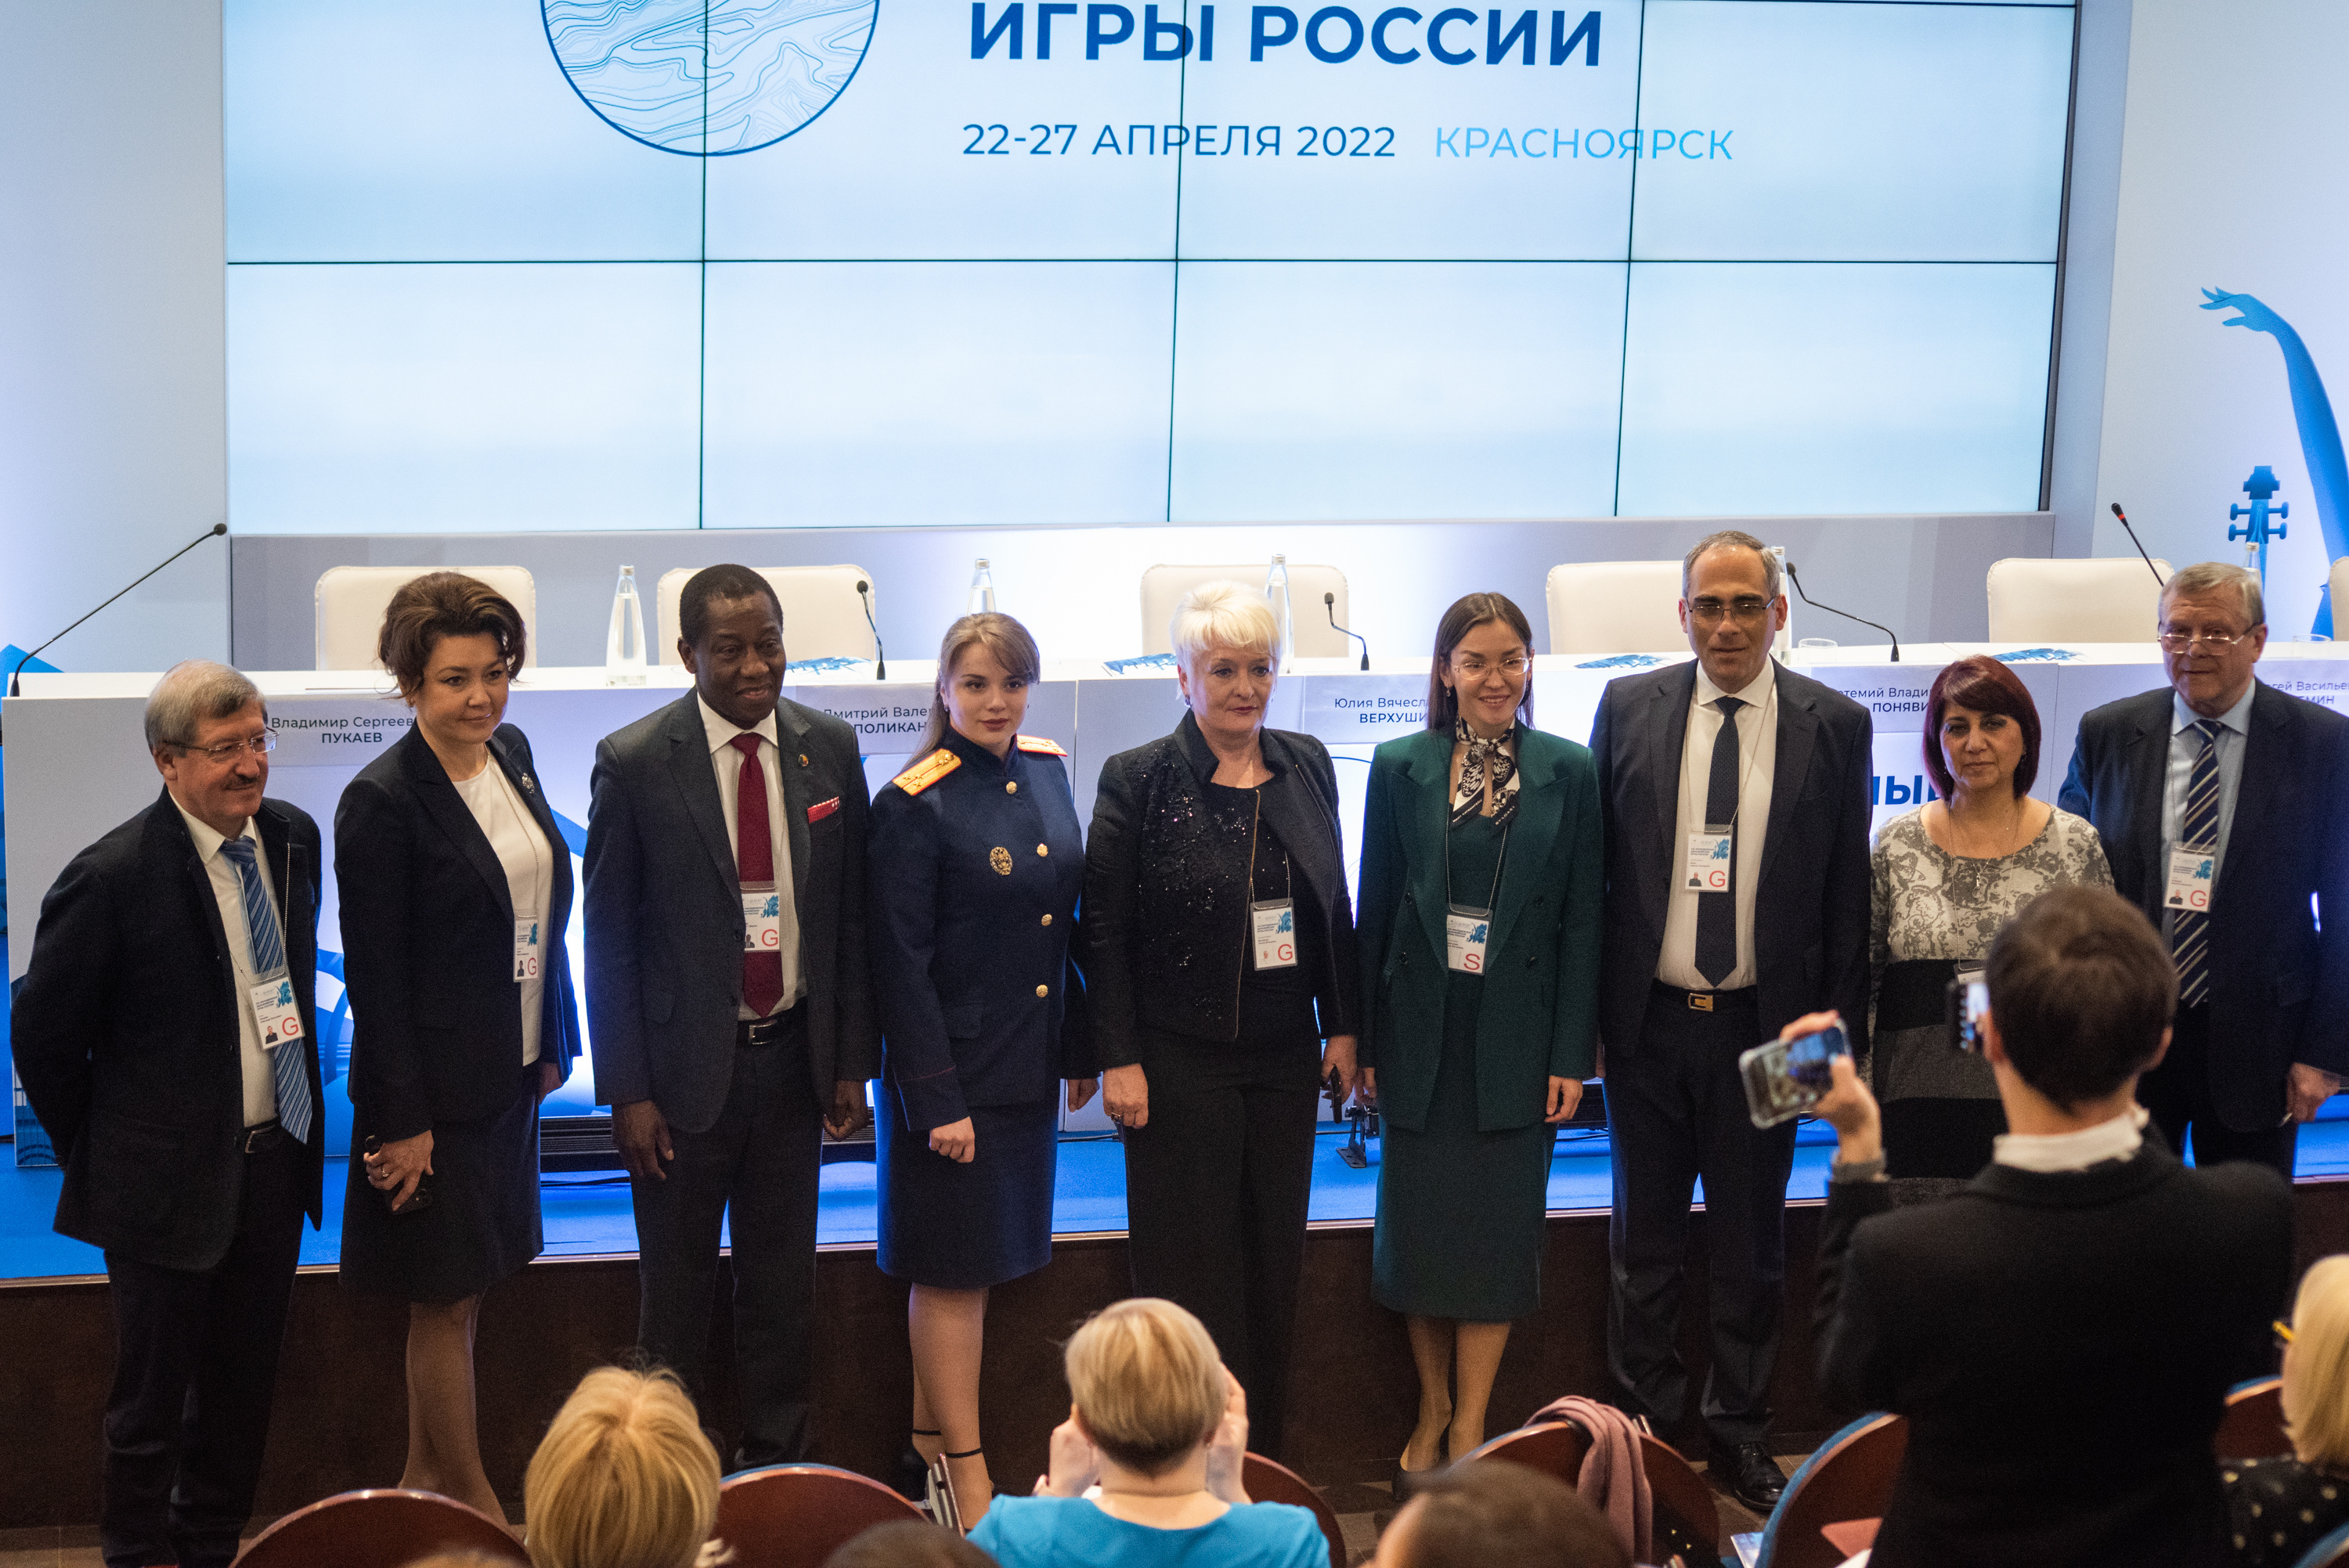 В работе конференции приняли участие эксперты из разных регионов России, а также из стран СНГ и дальнего зарубежья